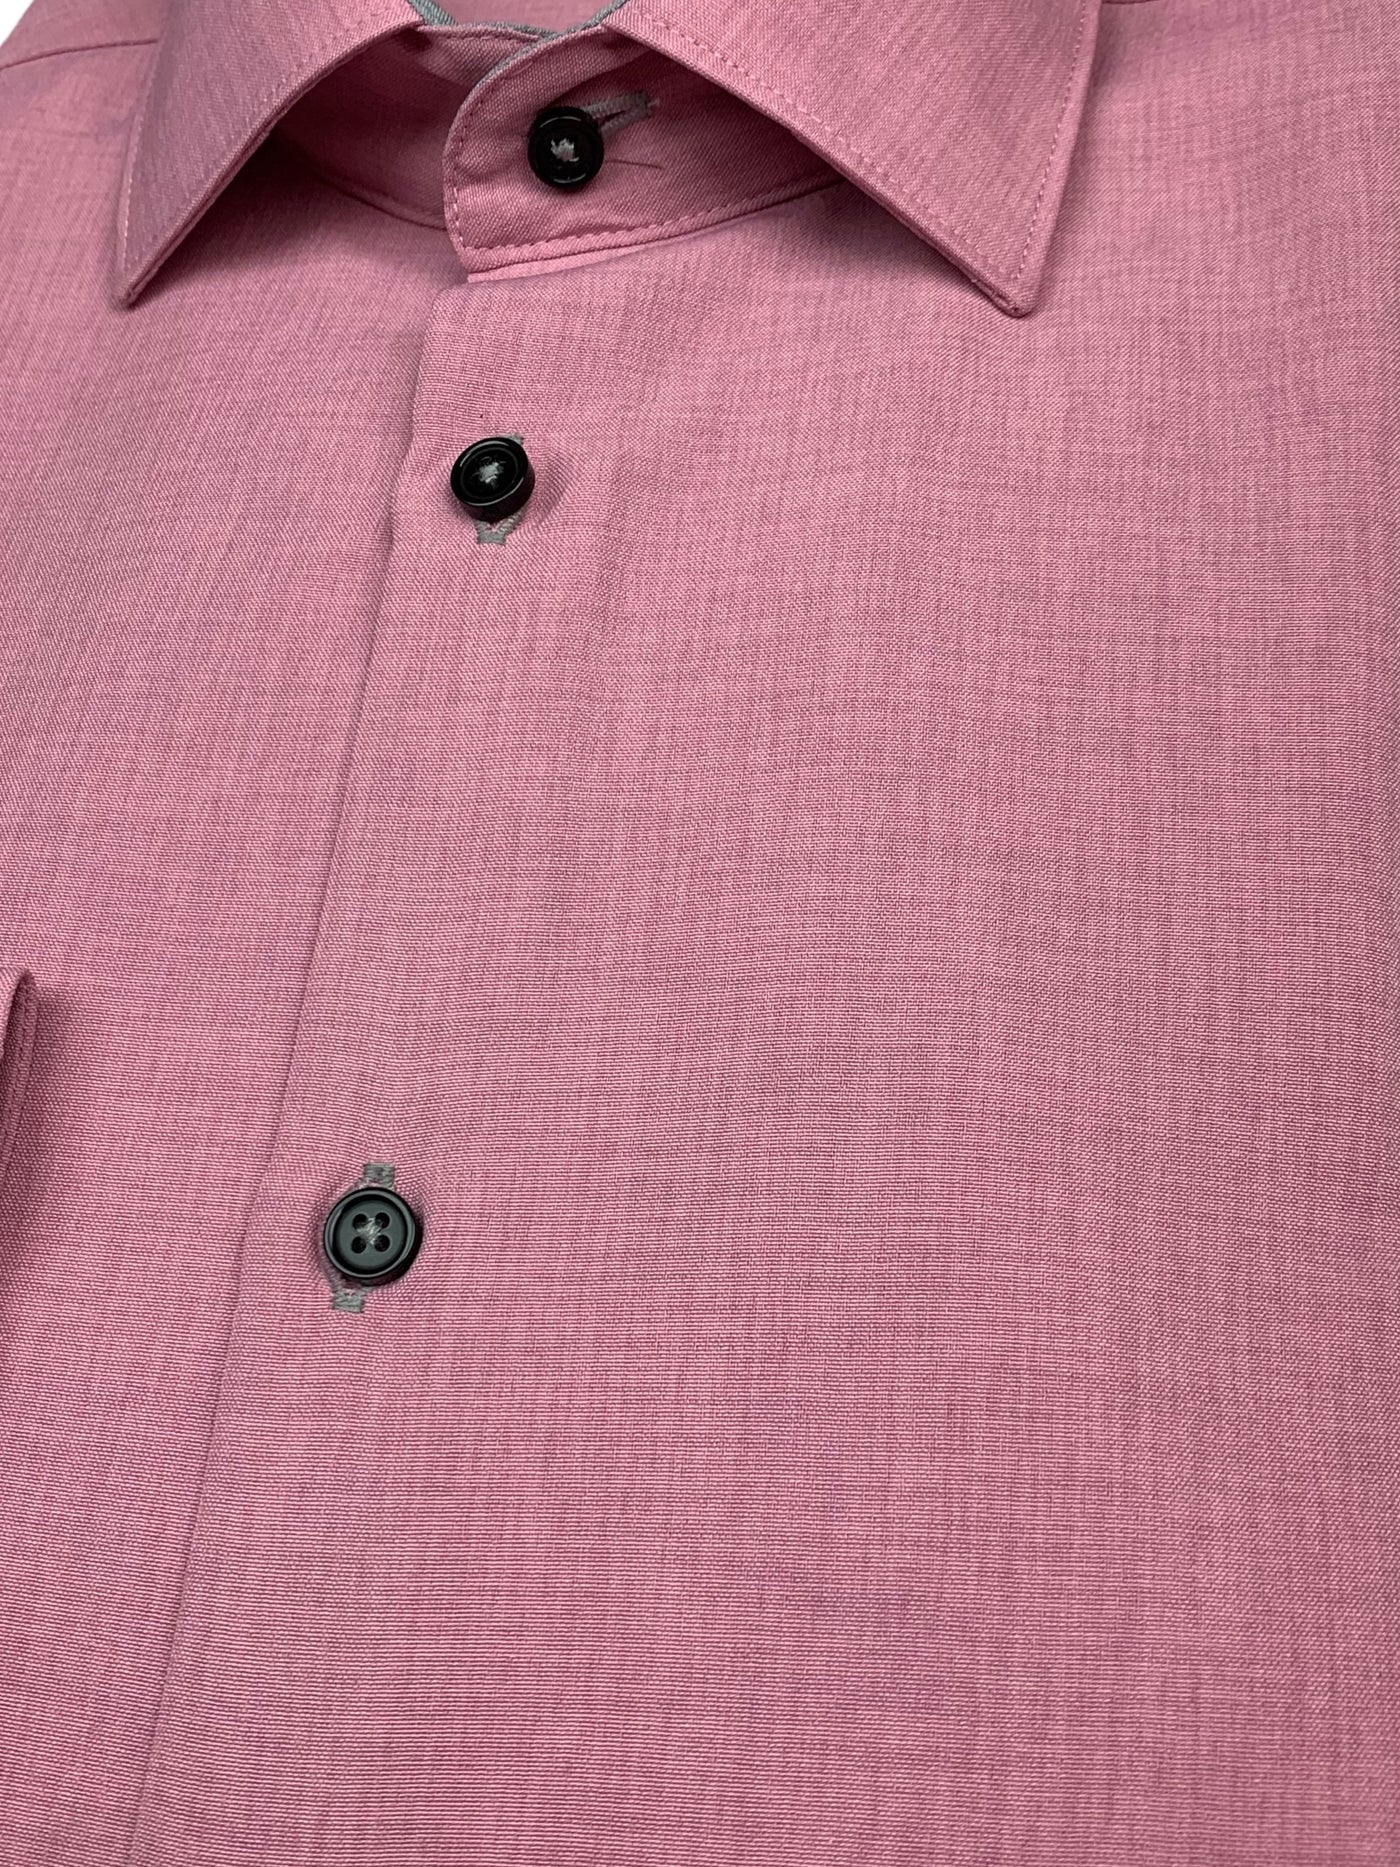 Chemise habillée microfibre rose à manches longues coupe ajustée